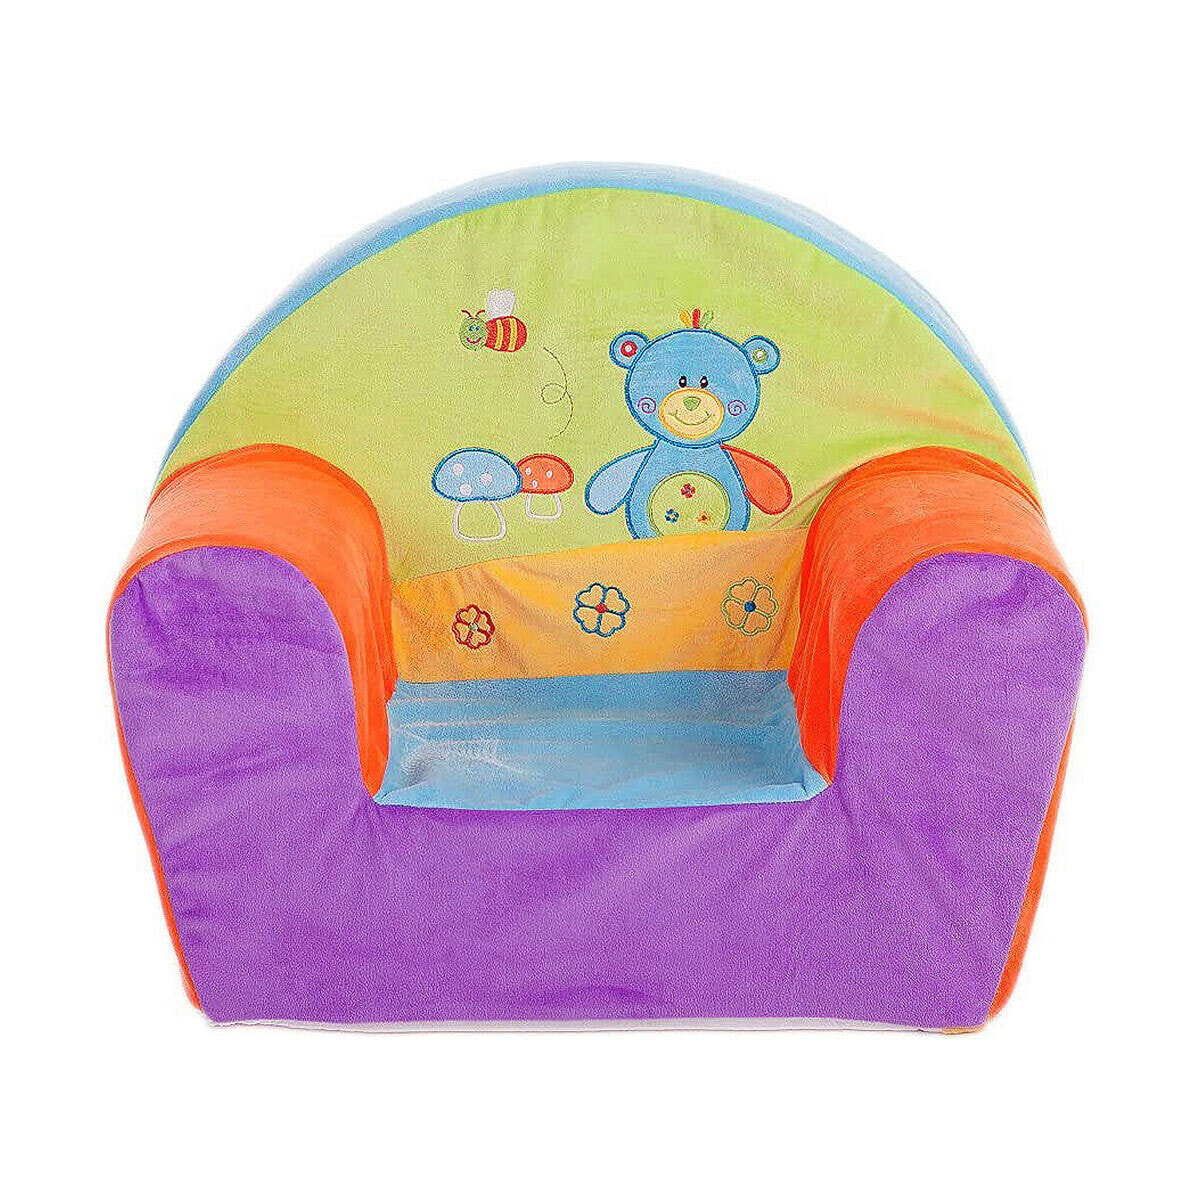 Детское кресло Разноцветный Медведь 44 x 34 x 53 cm